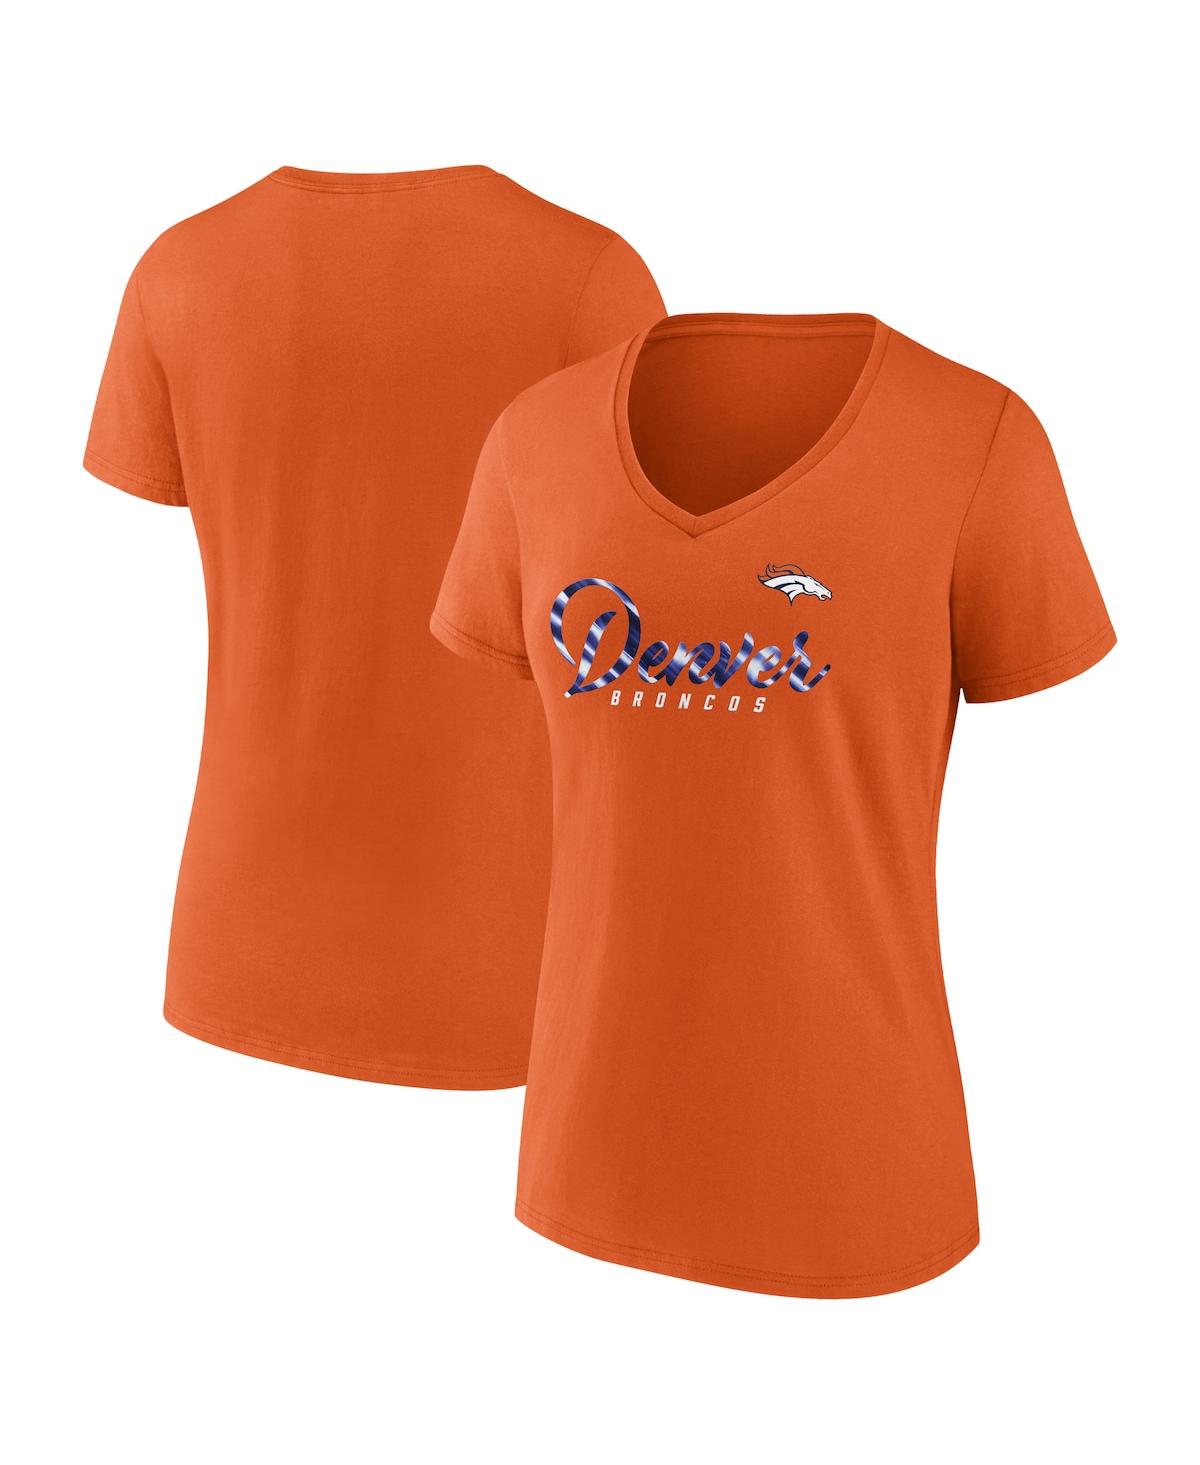 Fanatics Women's  Orange Denver Broncos Shine Time V-neck T-shirt